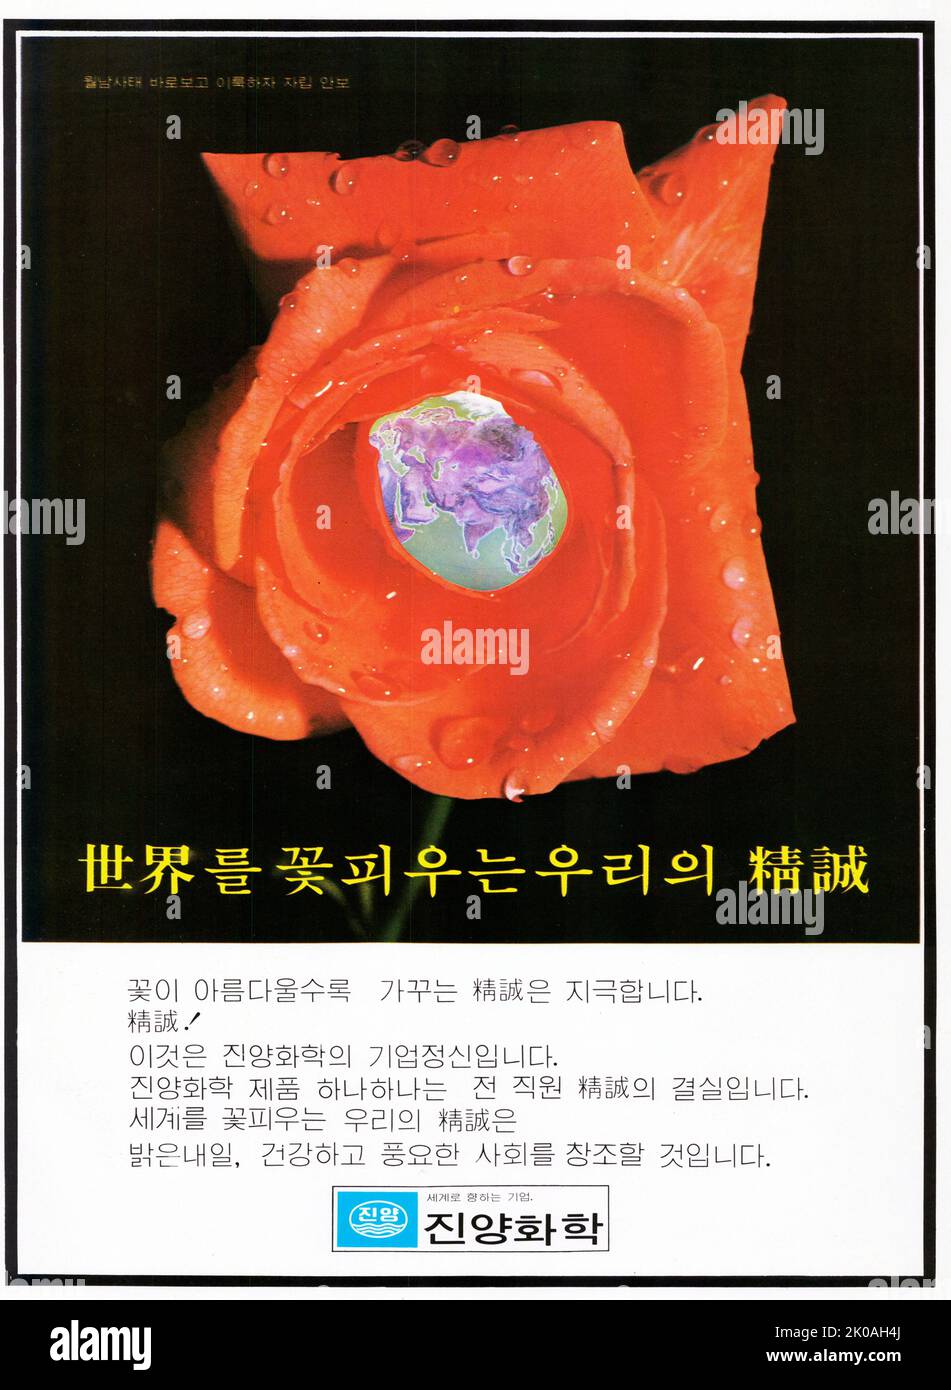 Anzeige von Jinyang Chemical Co., Ltd. Wurde 1974 in Busan gegründet. Das Unternehmen stellte chemische Präparate her. Stockfoto